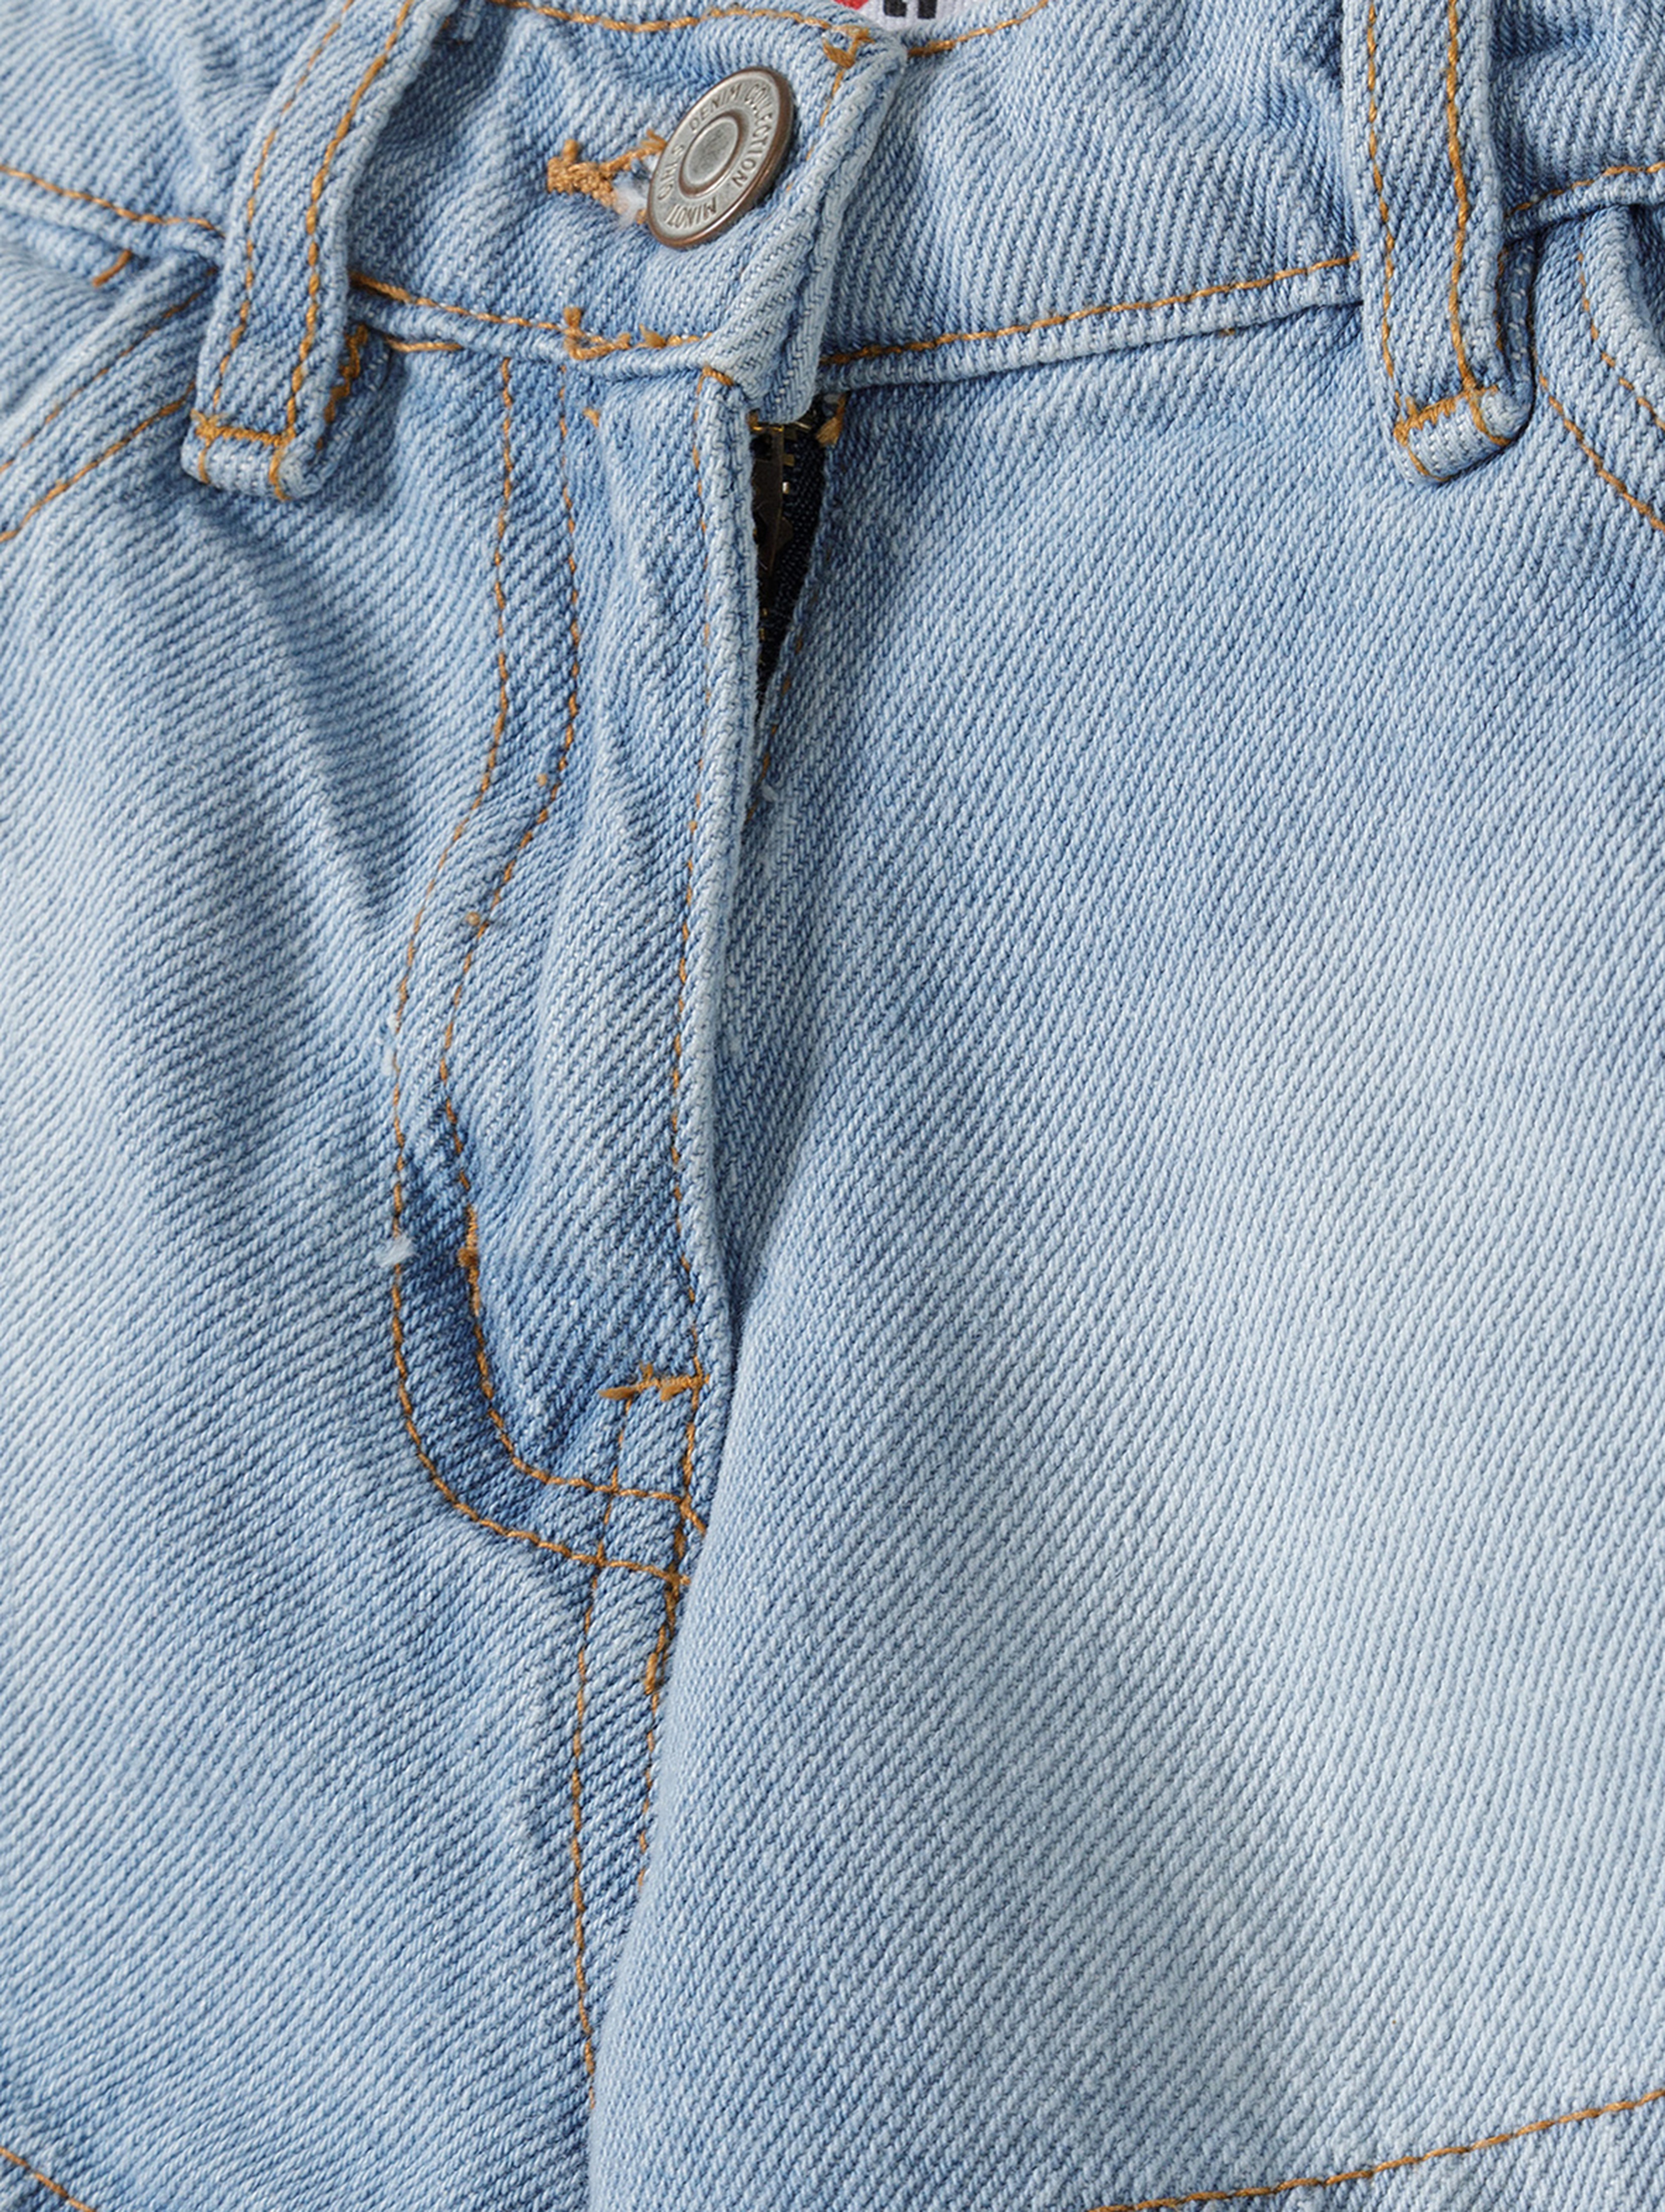 Jasnoniebieskie krótkie spodenki jeansowe niemowlęce